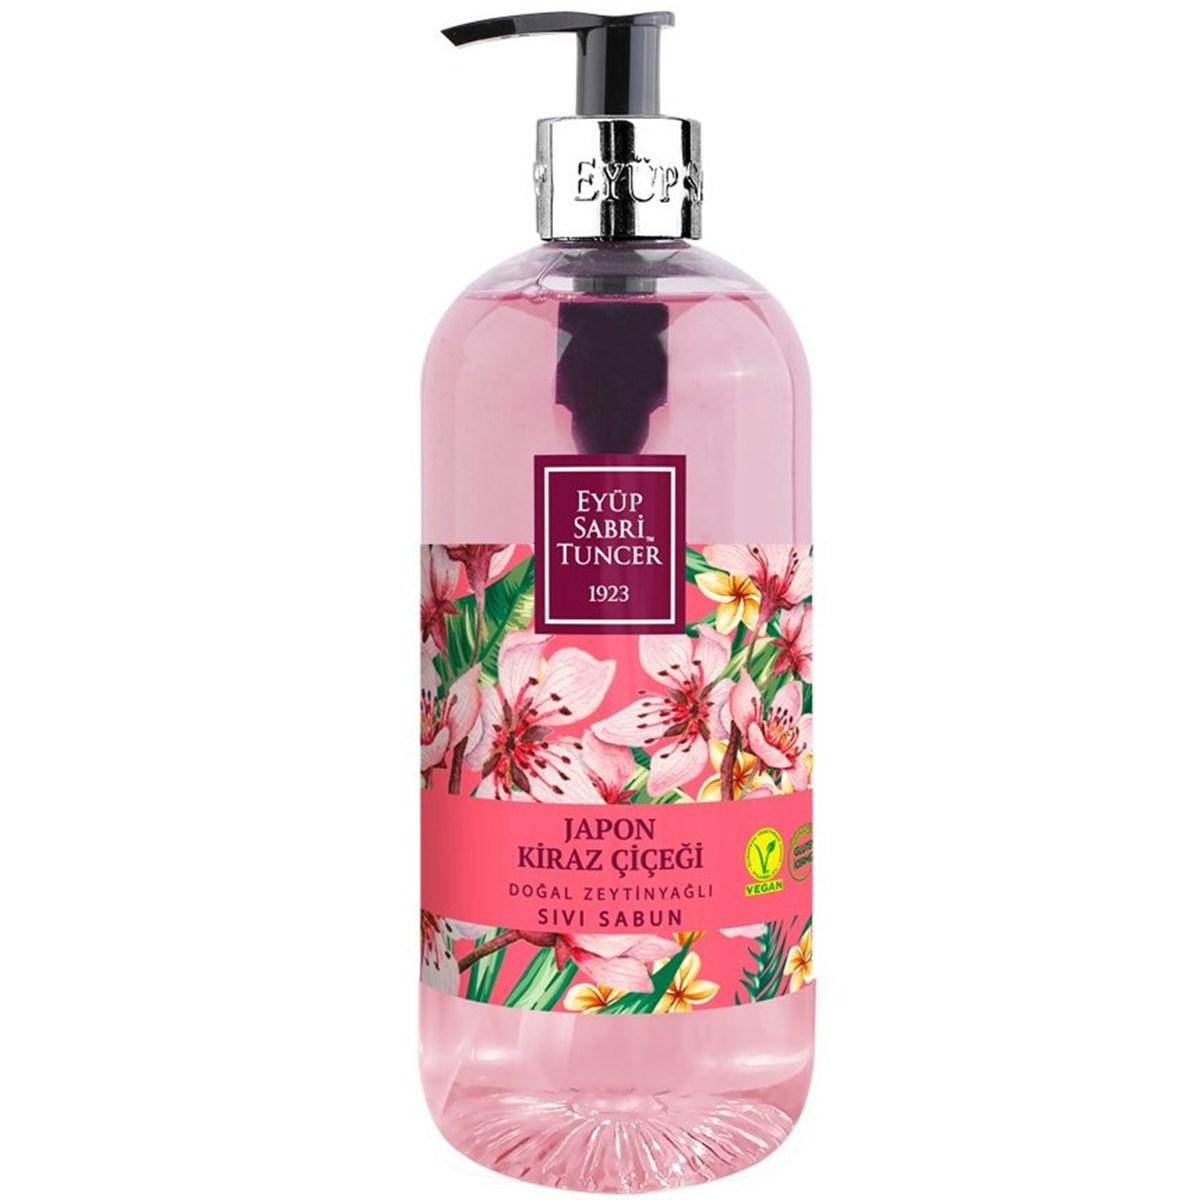 Eyüp Sabri Tuncer Japon Kiraz Çiçeği - Zeytinyağlı Nemlendiricili Sıvı Sabun 500 ml Tekli